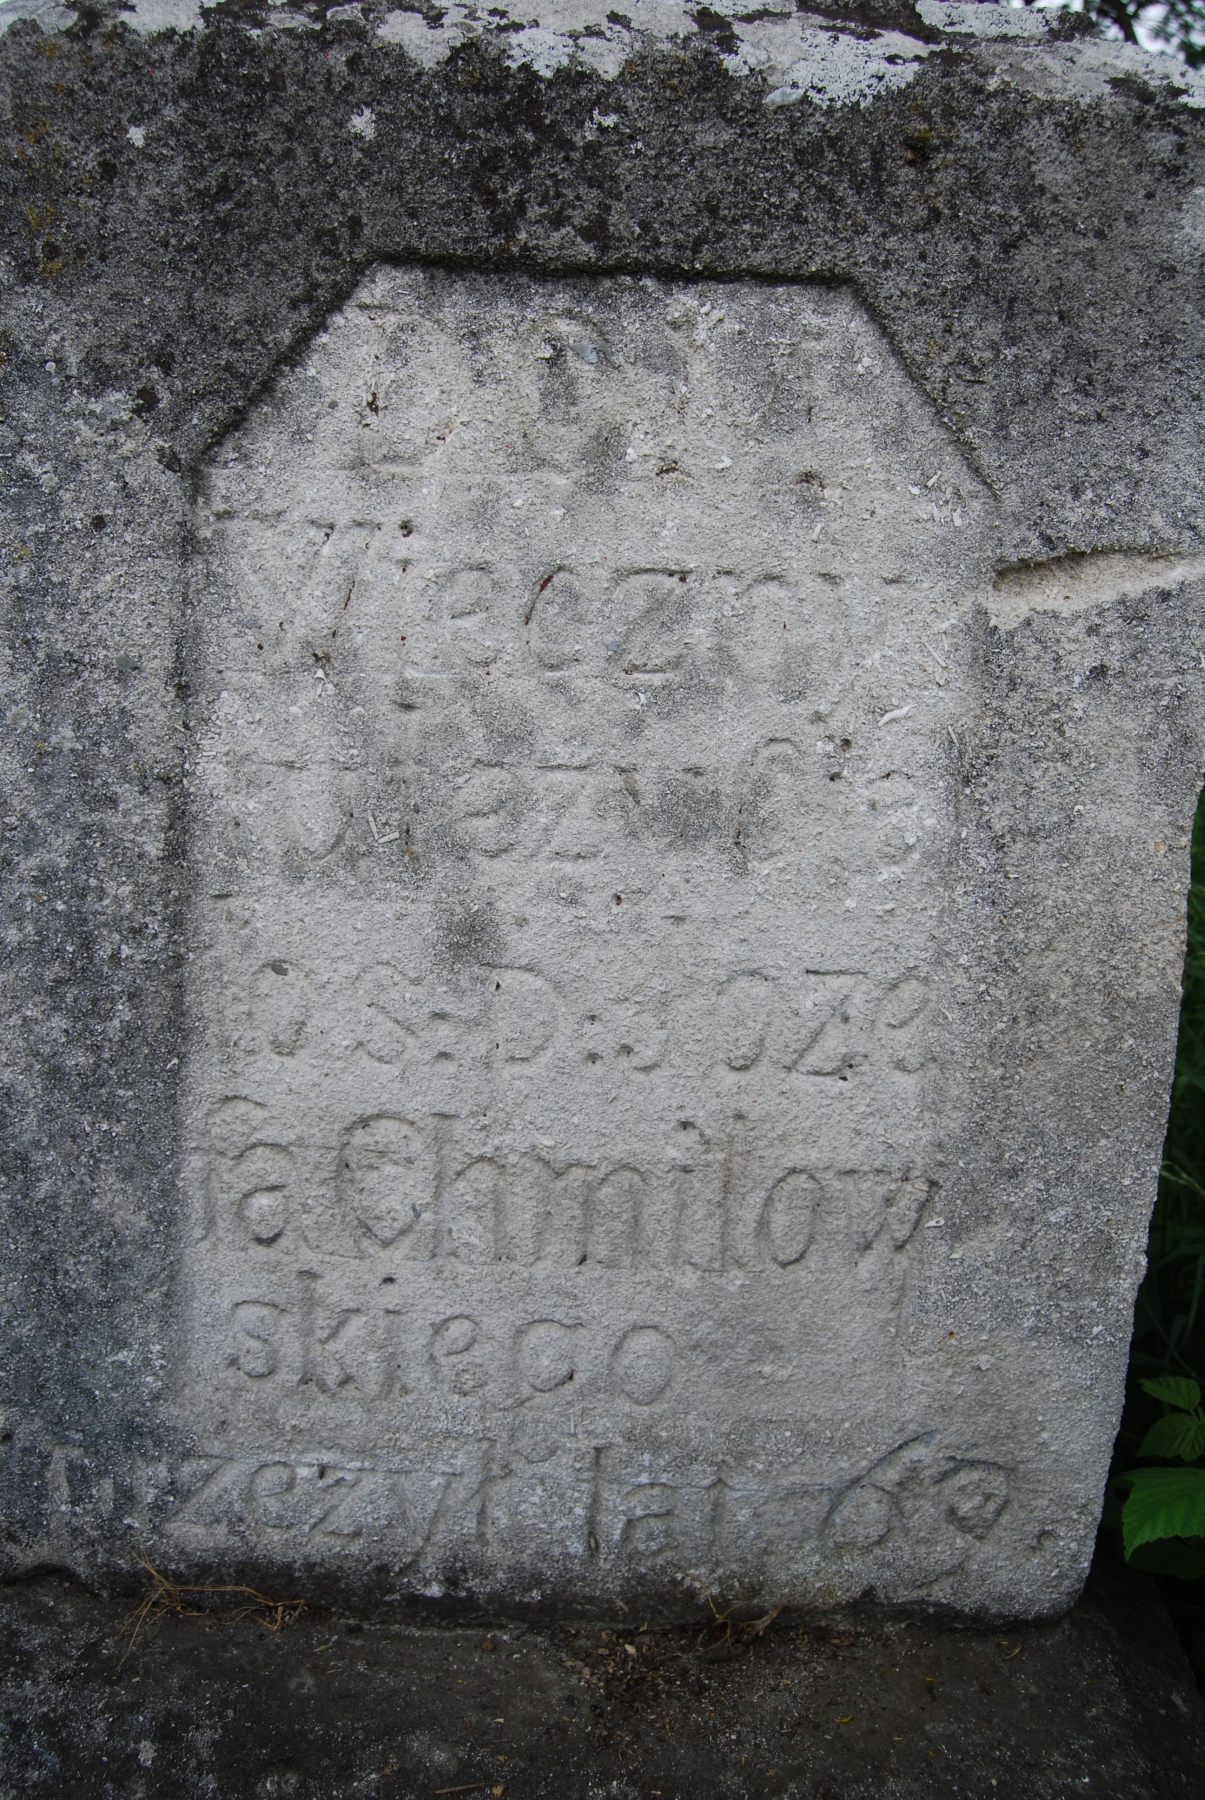 Tombstone of Jozef Chmielowski, Zbarazh cemetery, as of 2018